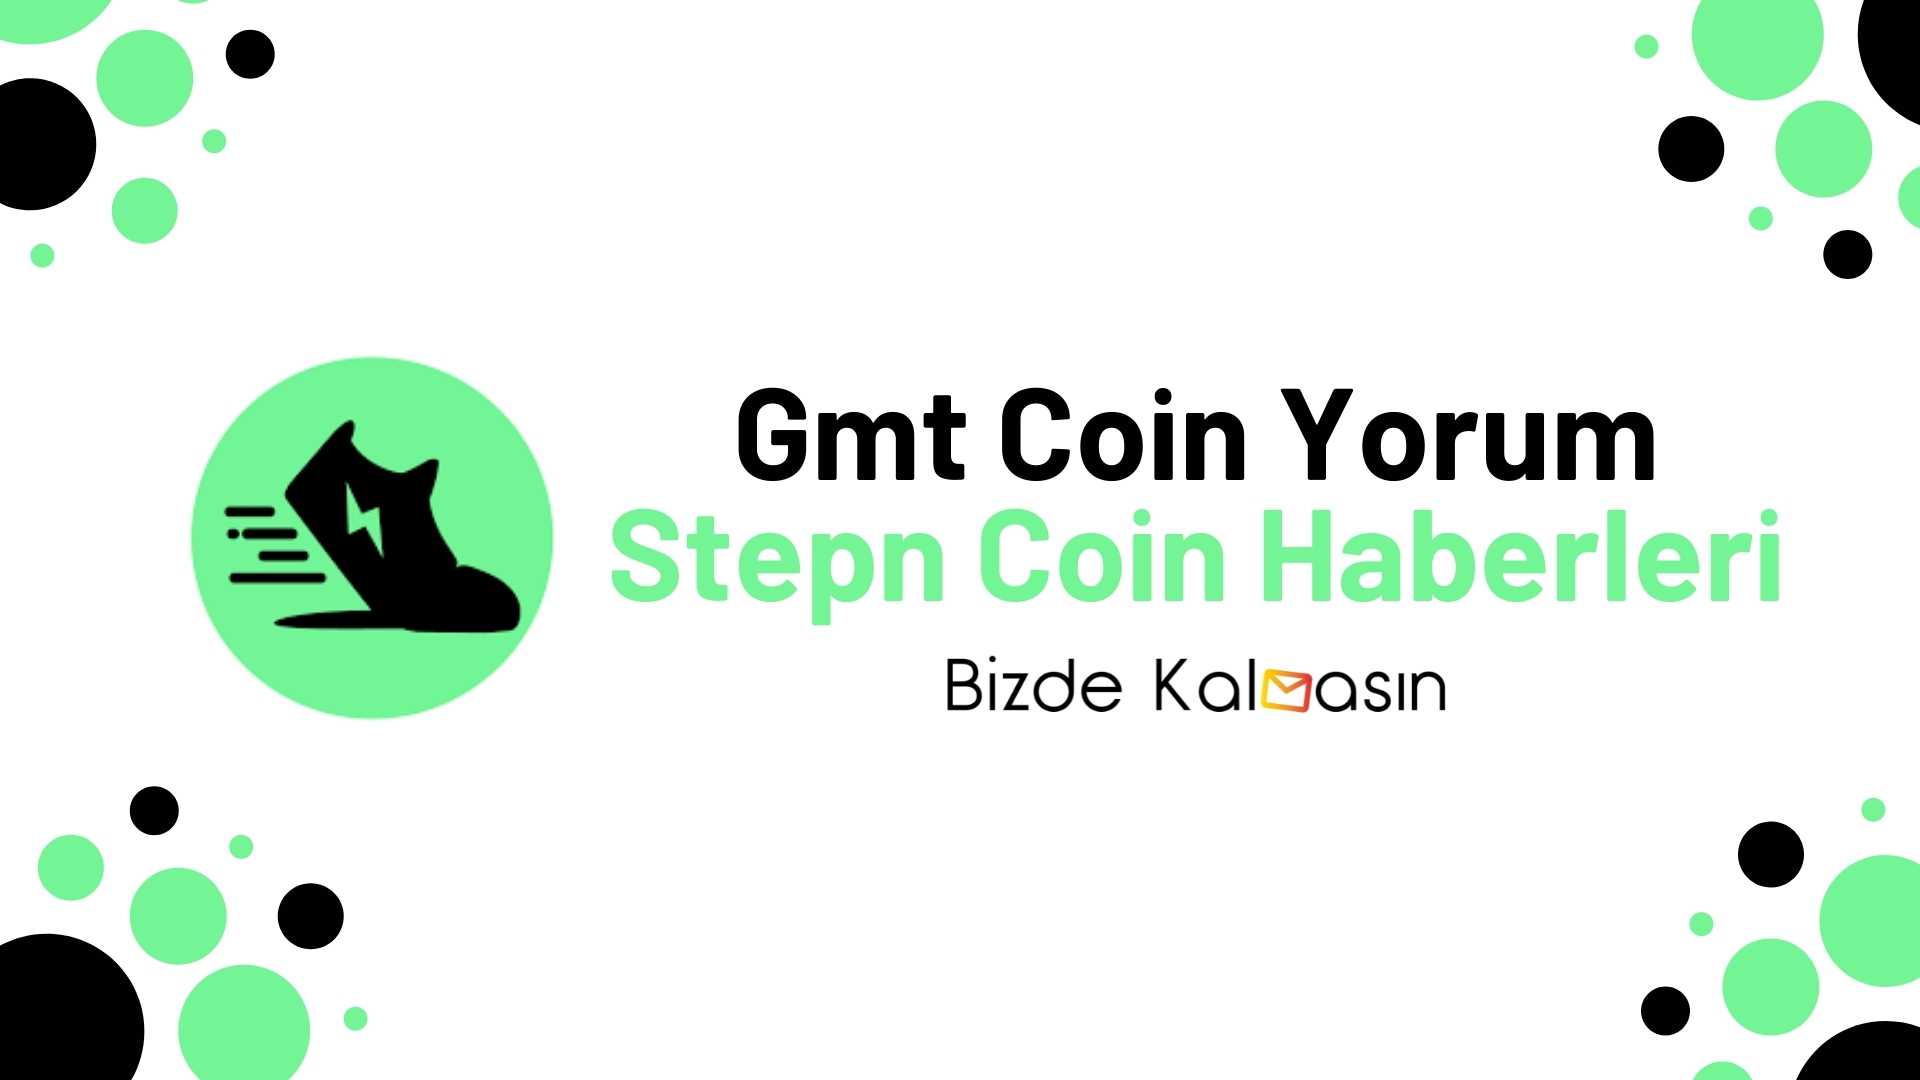 Gmt coin